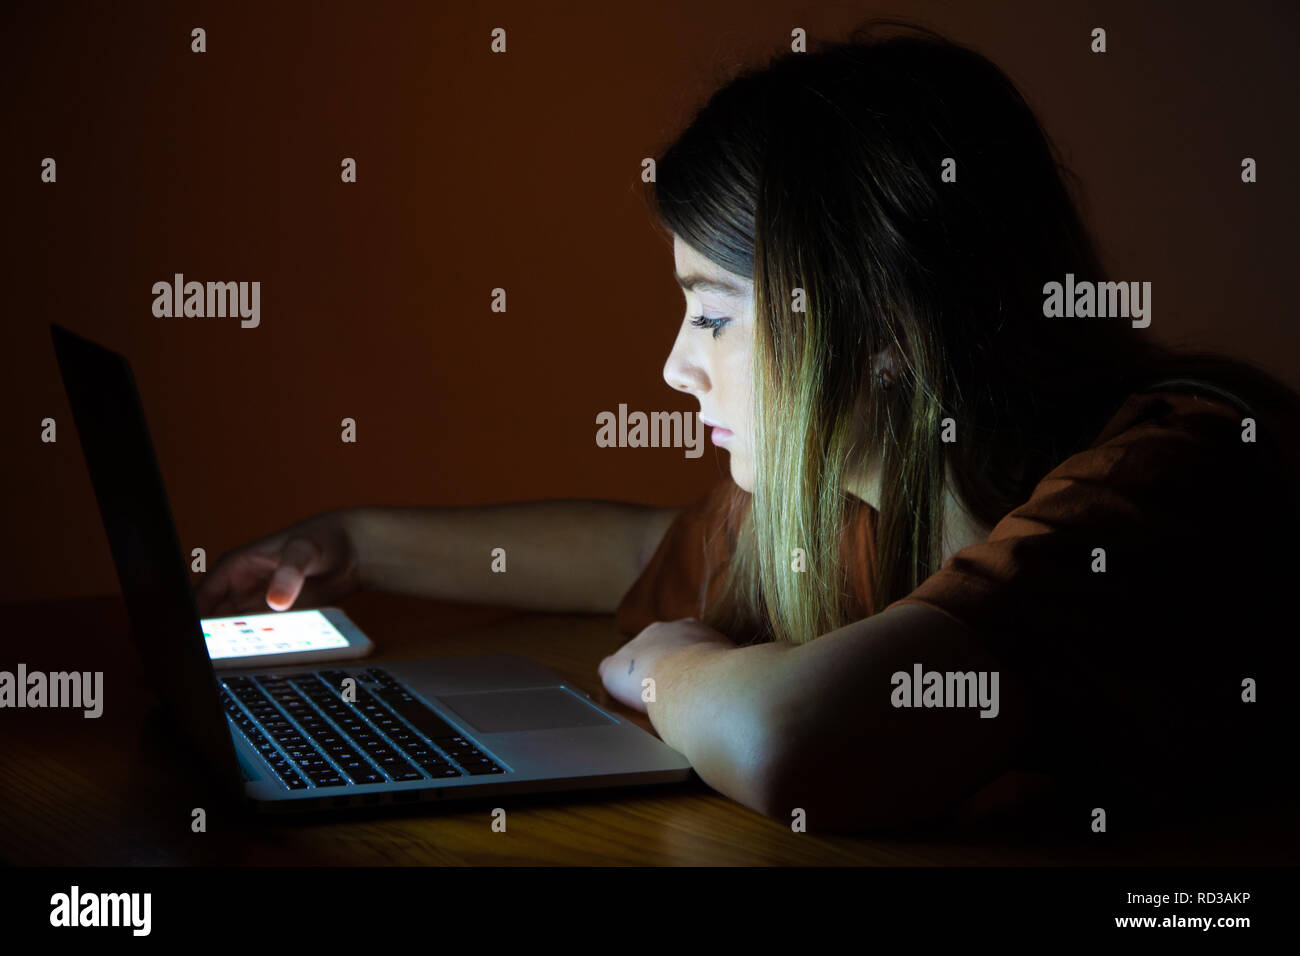 Una bonita adolescente utilizando su ordenador portátil y teléfono móvil durante la noche. Foto de stock